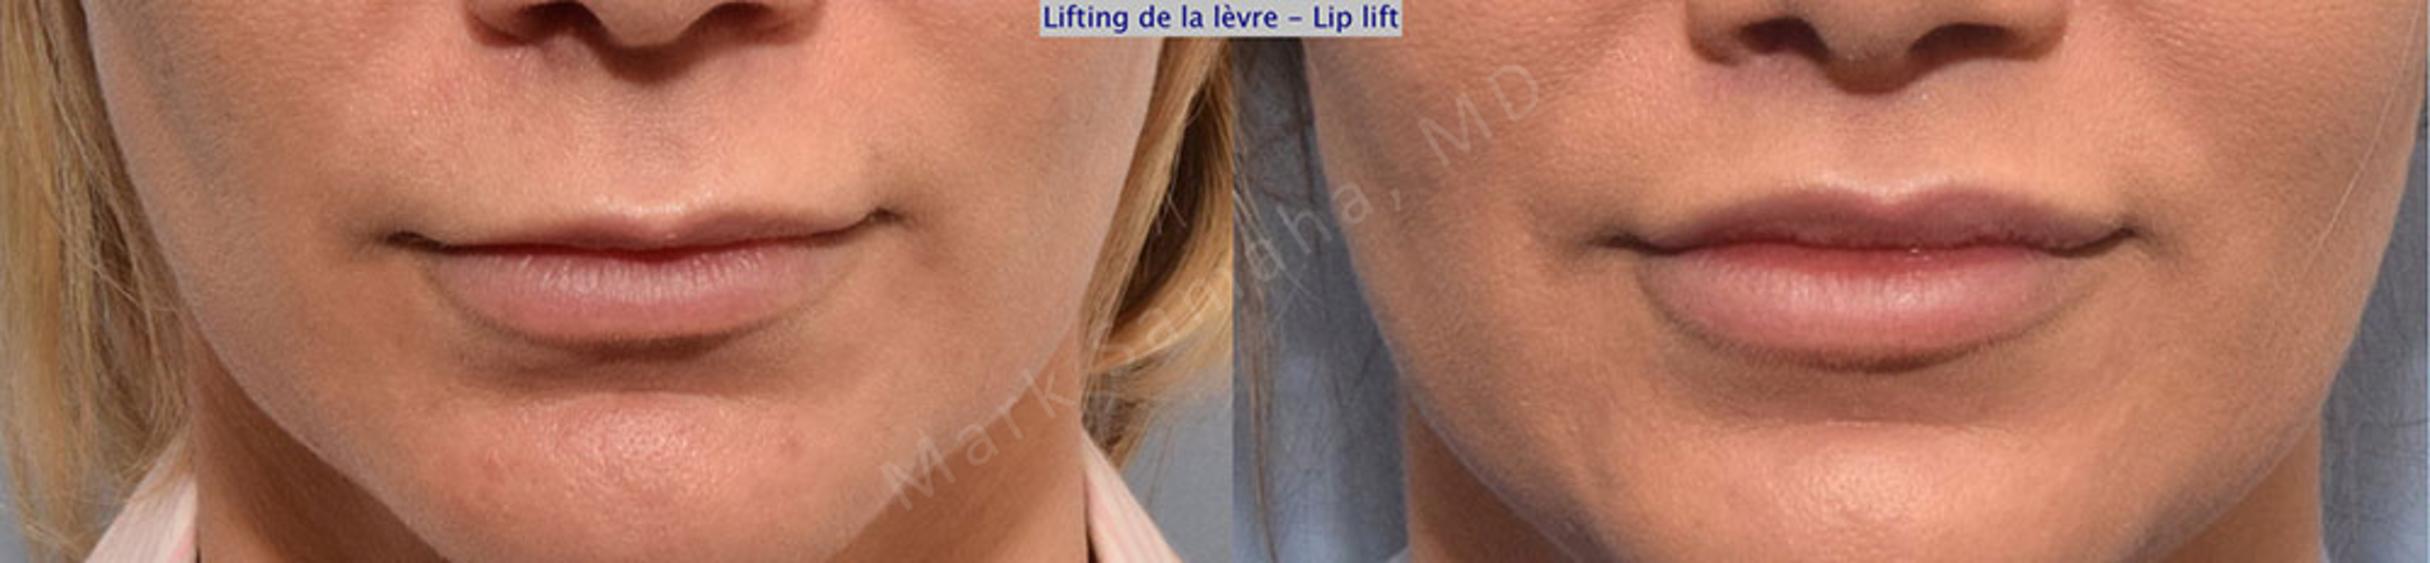 Before & After Lifting de la lèvre supérieure / Lip Lift  Case 26 View #1 View in Mount Royal, QC